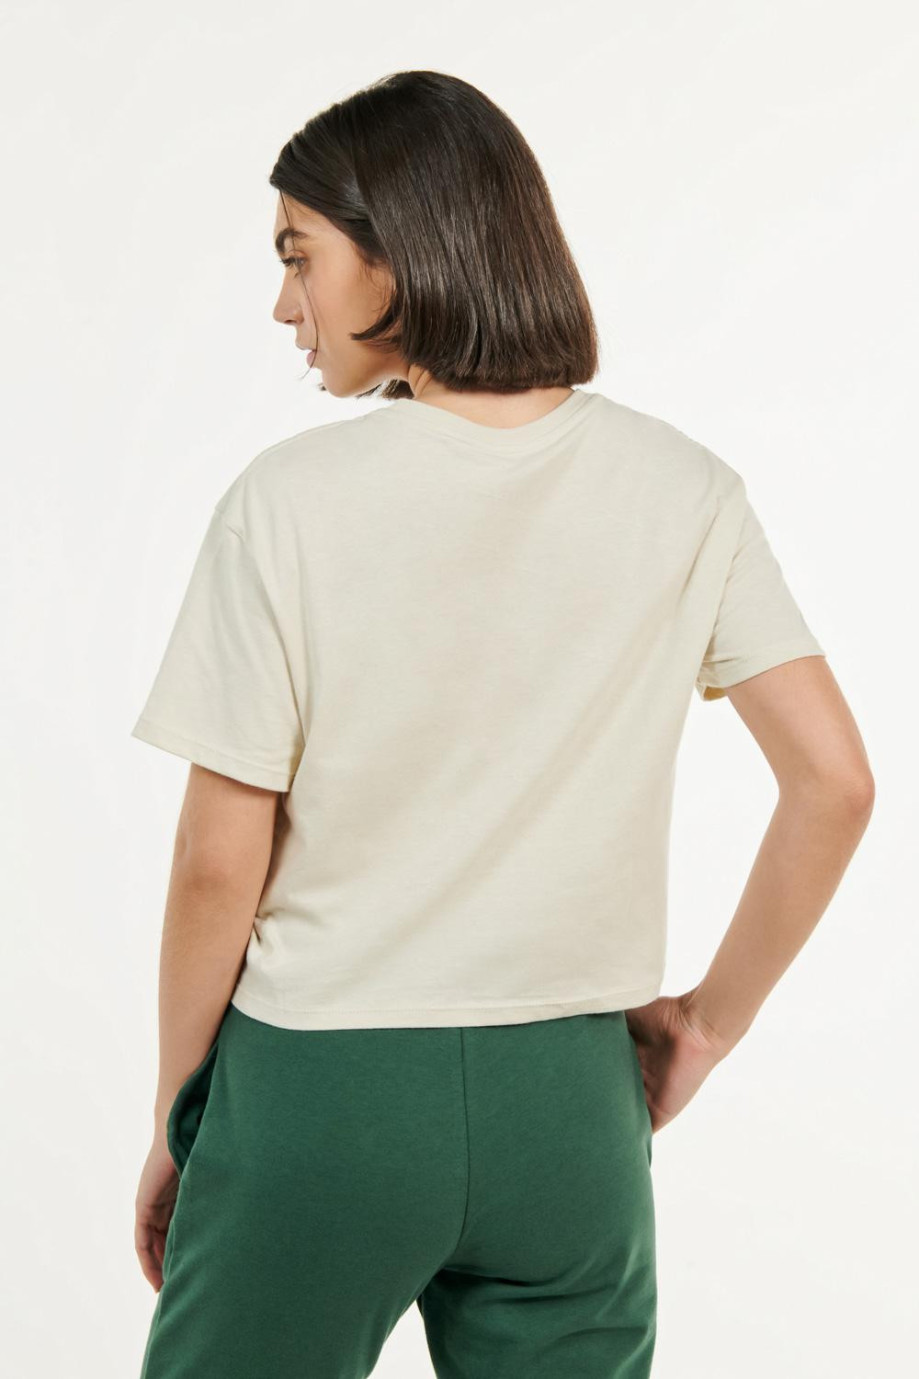 Camiseta unicolor crop top con cuello redondo en rib y manga corta